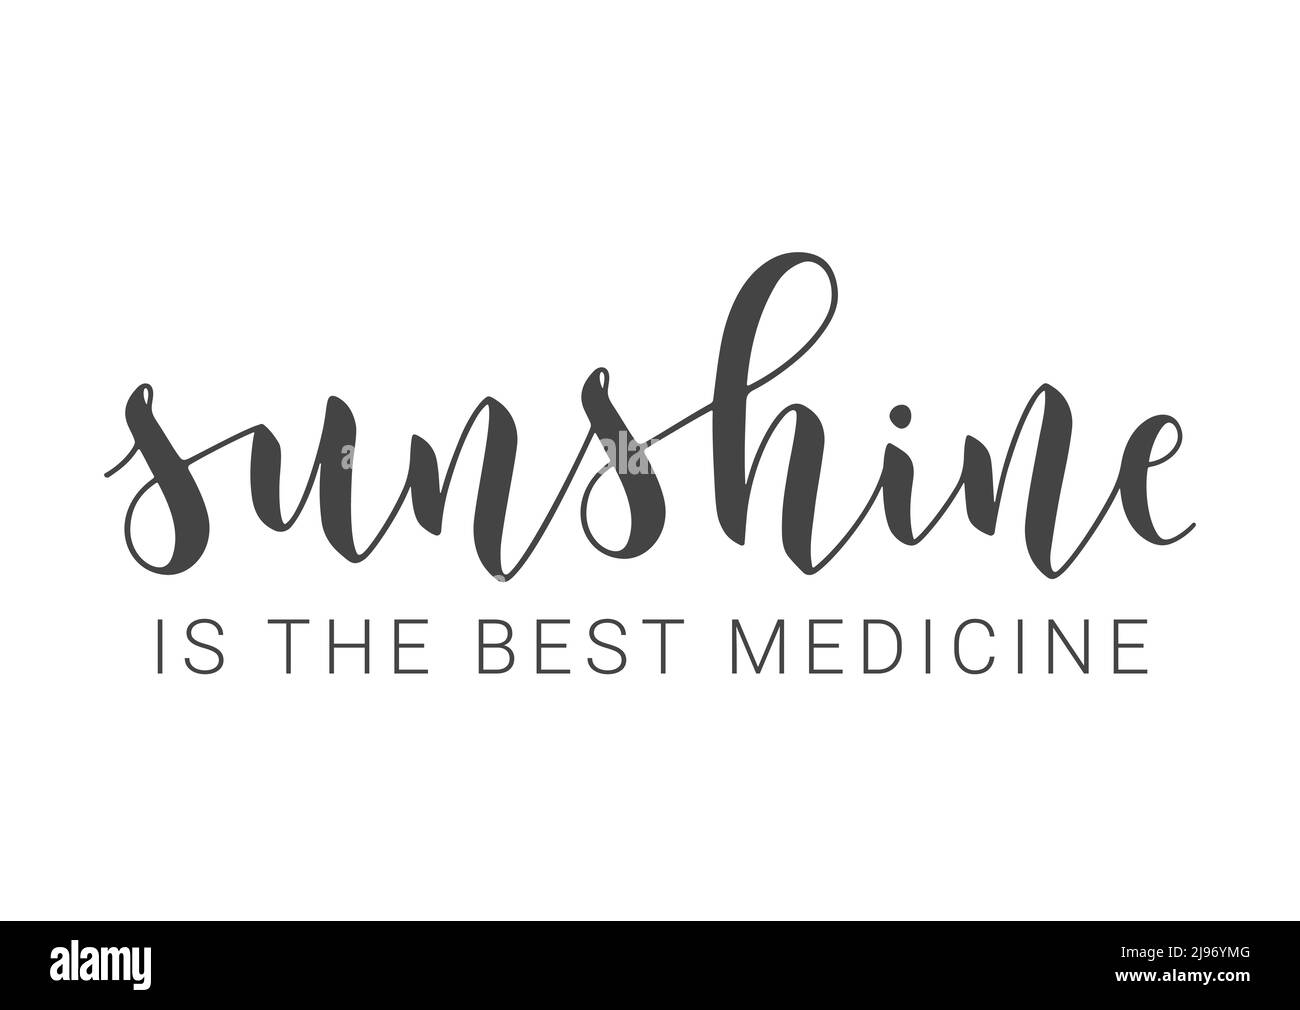 Illustrazione vettoriale. Scritta a mano di Sunshine è la migliore medicina. Modello per scheda, etichetta, cartolina, poster, adesivo, Prodotto Web o di stampa. Illustrazione Vettoriale